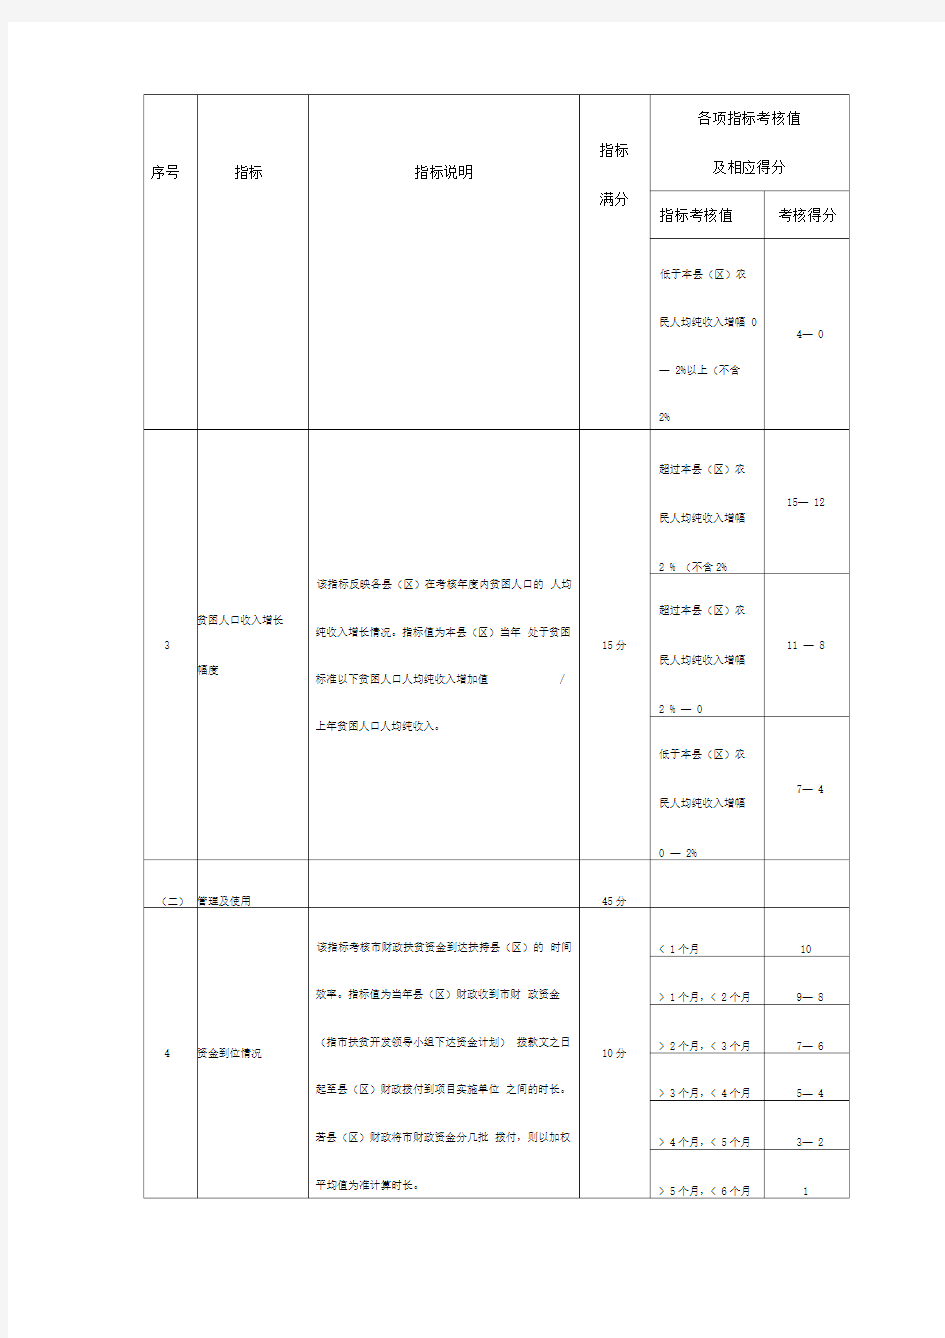 南宁市财政扶贫资金绩效考评量化指标表